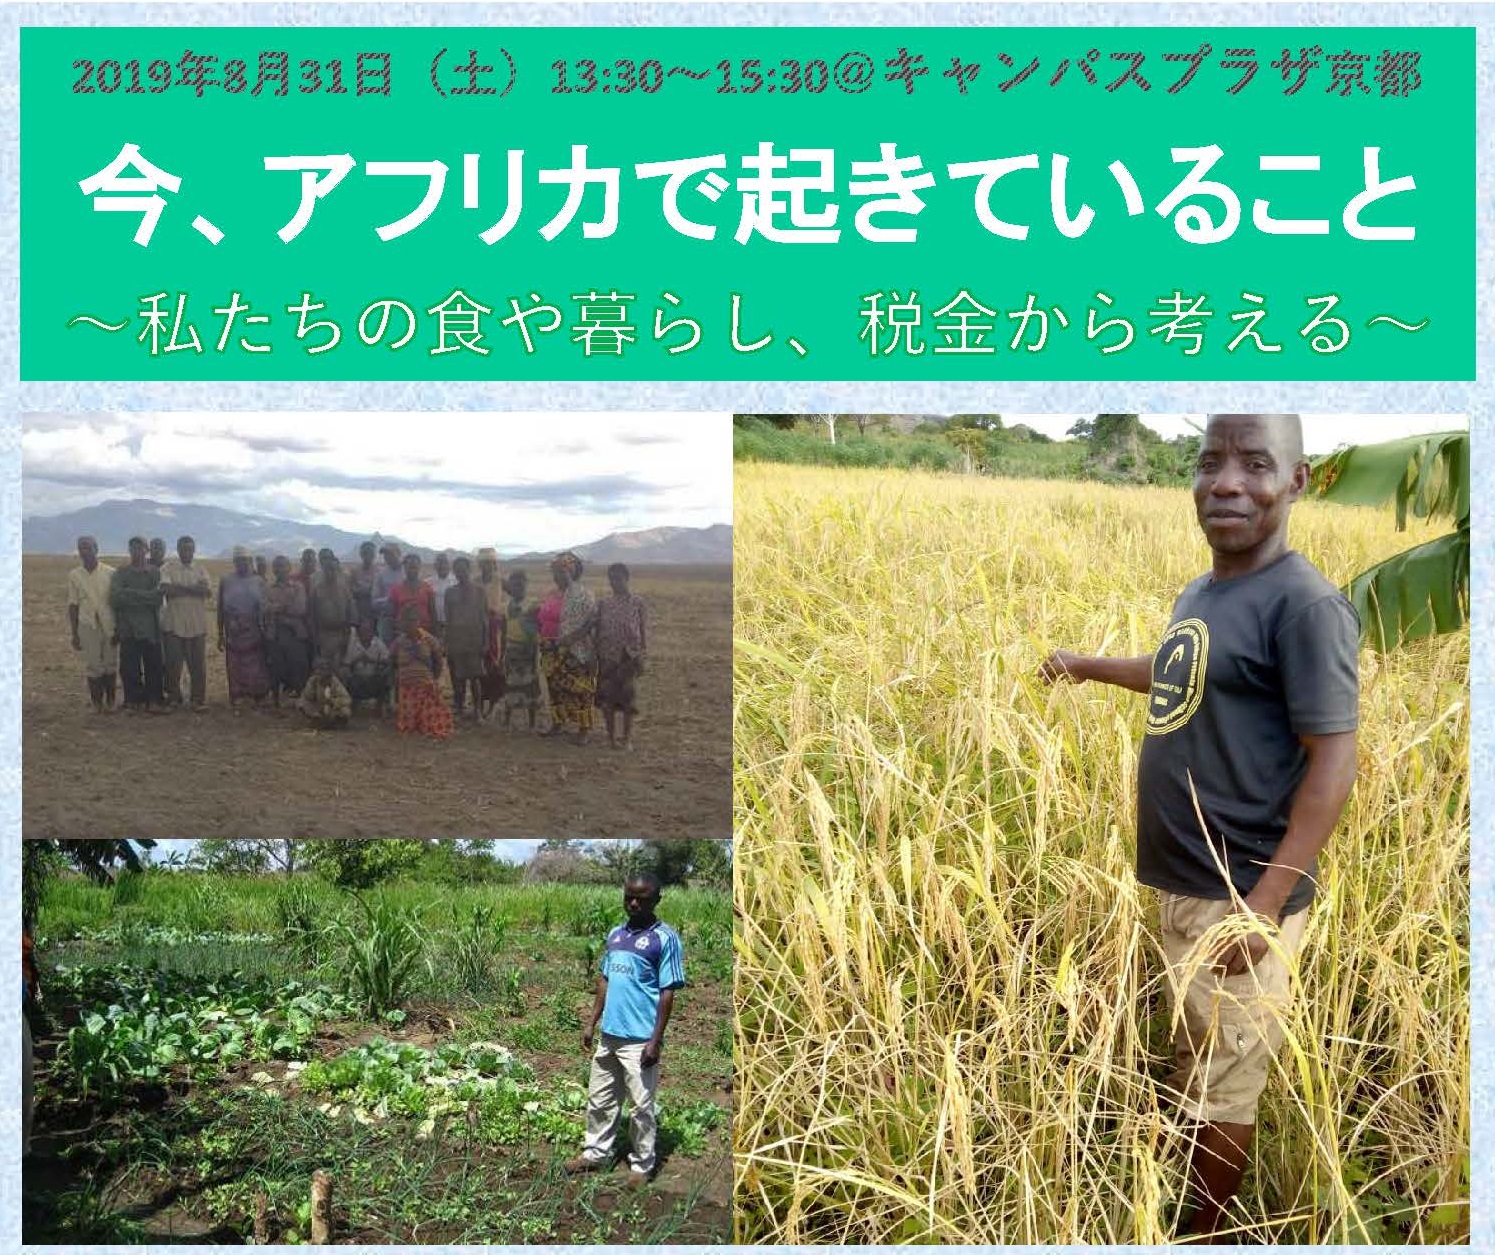 アフリカ諸国の国家元首・首脳級などが一堂に会するTICAD7（第７回アフリカ開発会議）にあわせてアフリカの農民運動のリーダーを日本の市民団体が招へい、公式サイドイベント等を開催